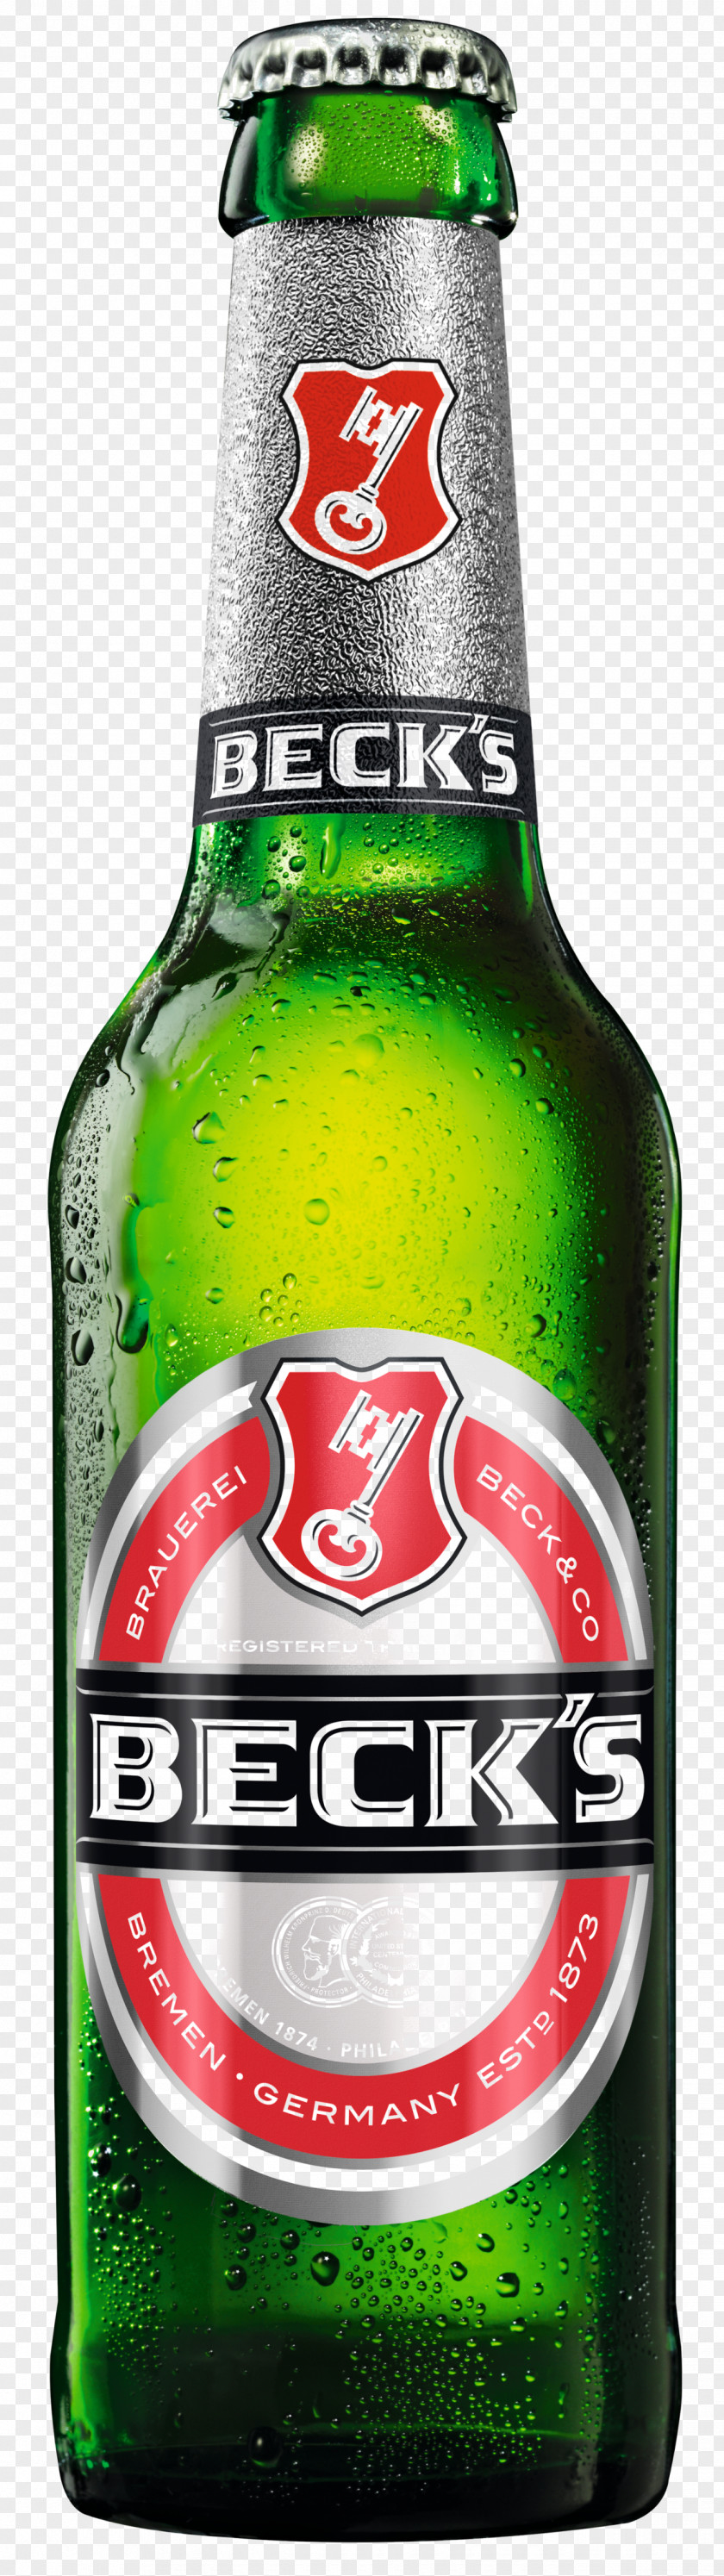 Beer Beck's Brewery Pilsner Anheuser-Busch InBev Bottle PNG